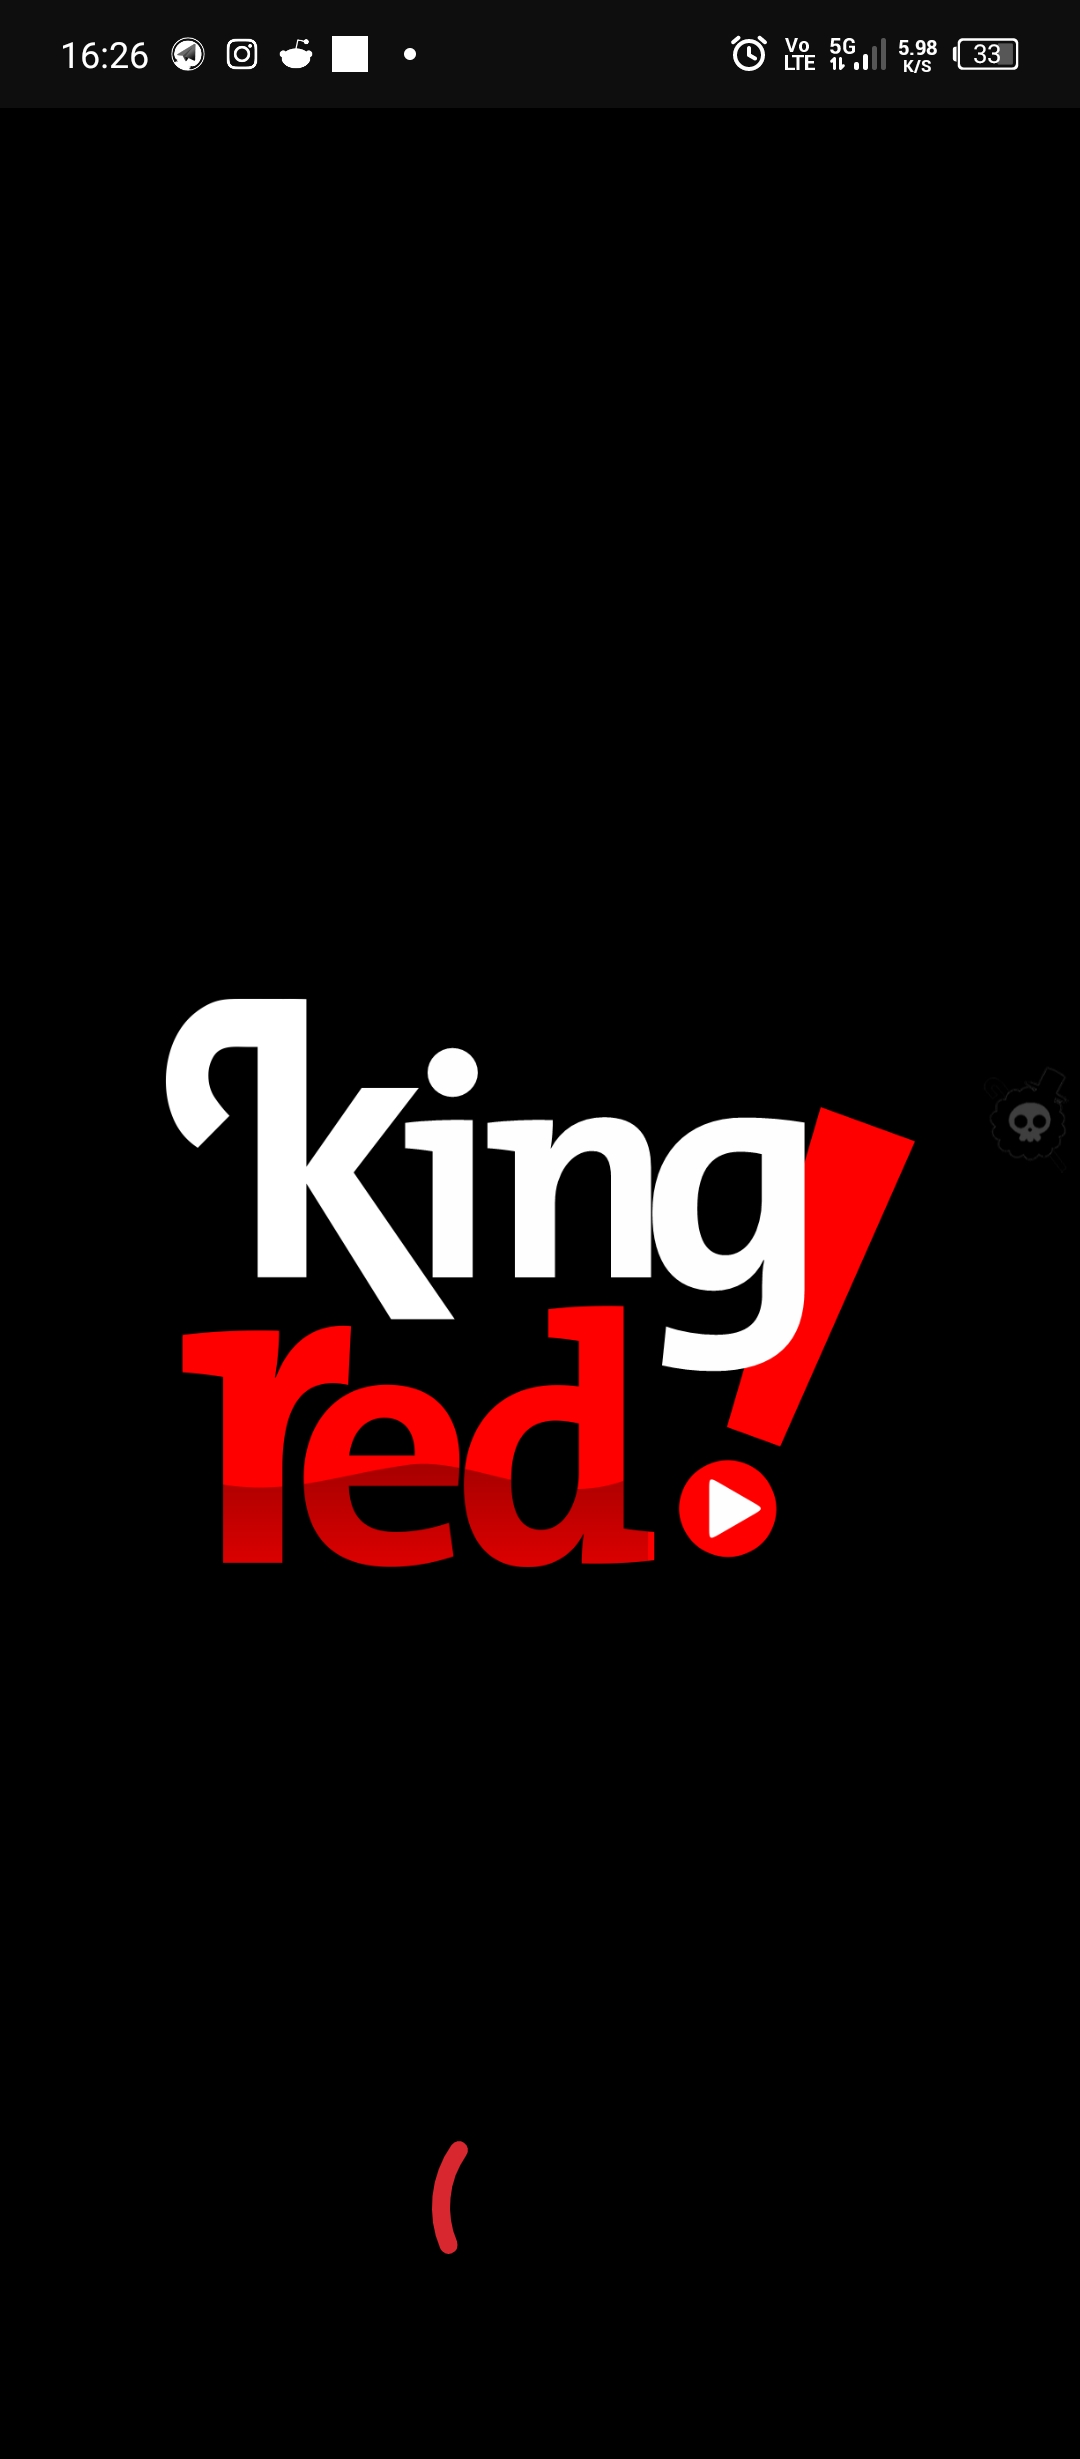 Apertura de la aplicación King Red